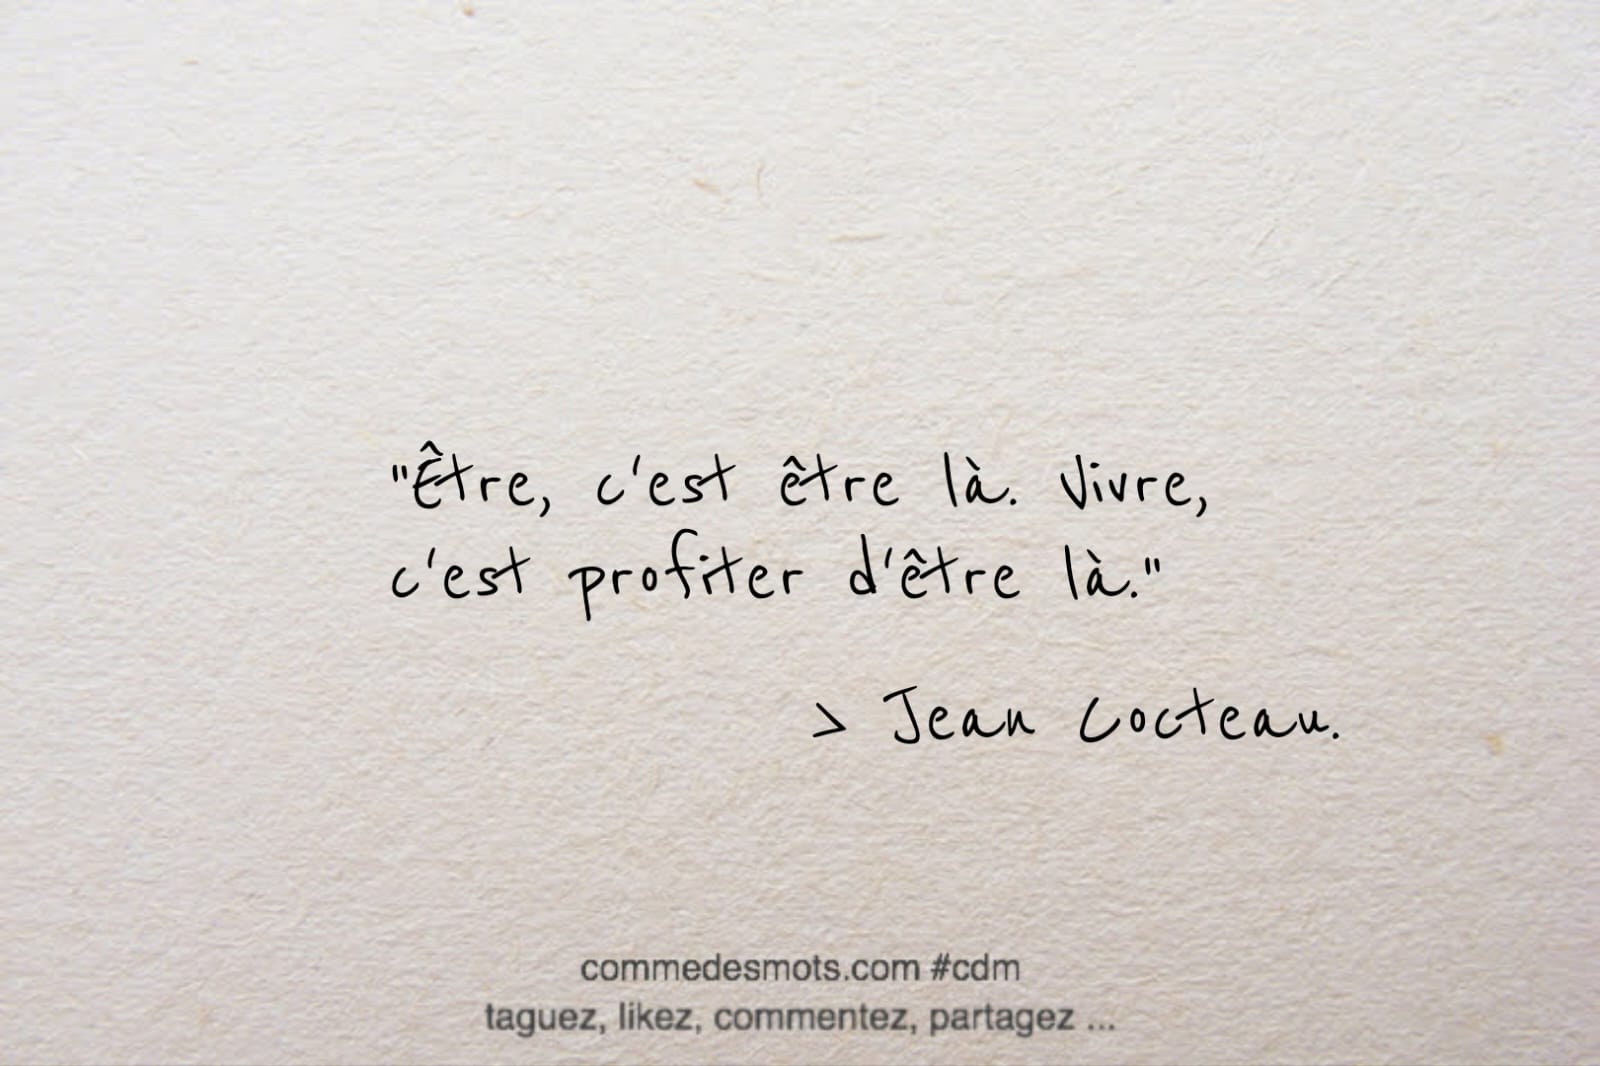 Citation du jour de Jean Cocteau "Être, c'est être là. Vivre, c'est profiter d'être là."